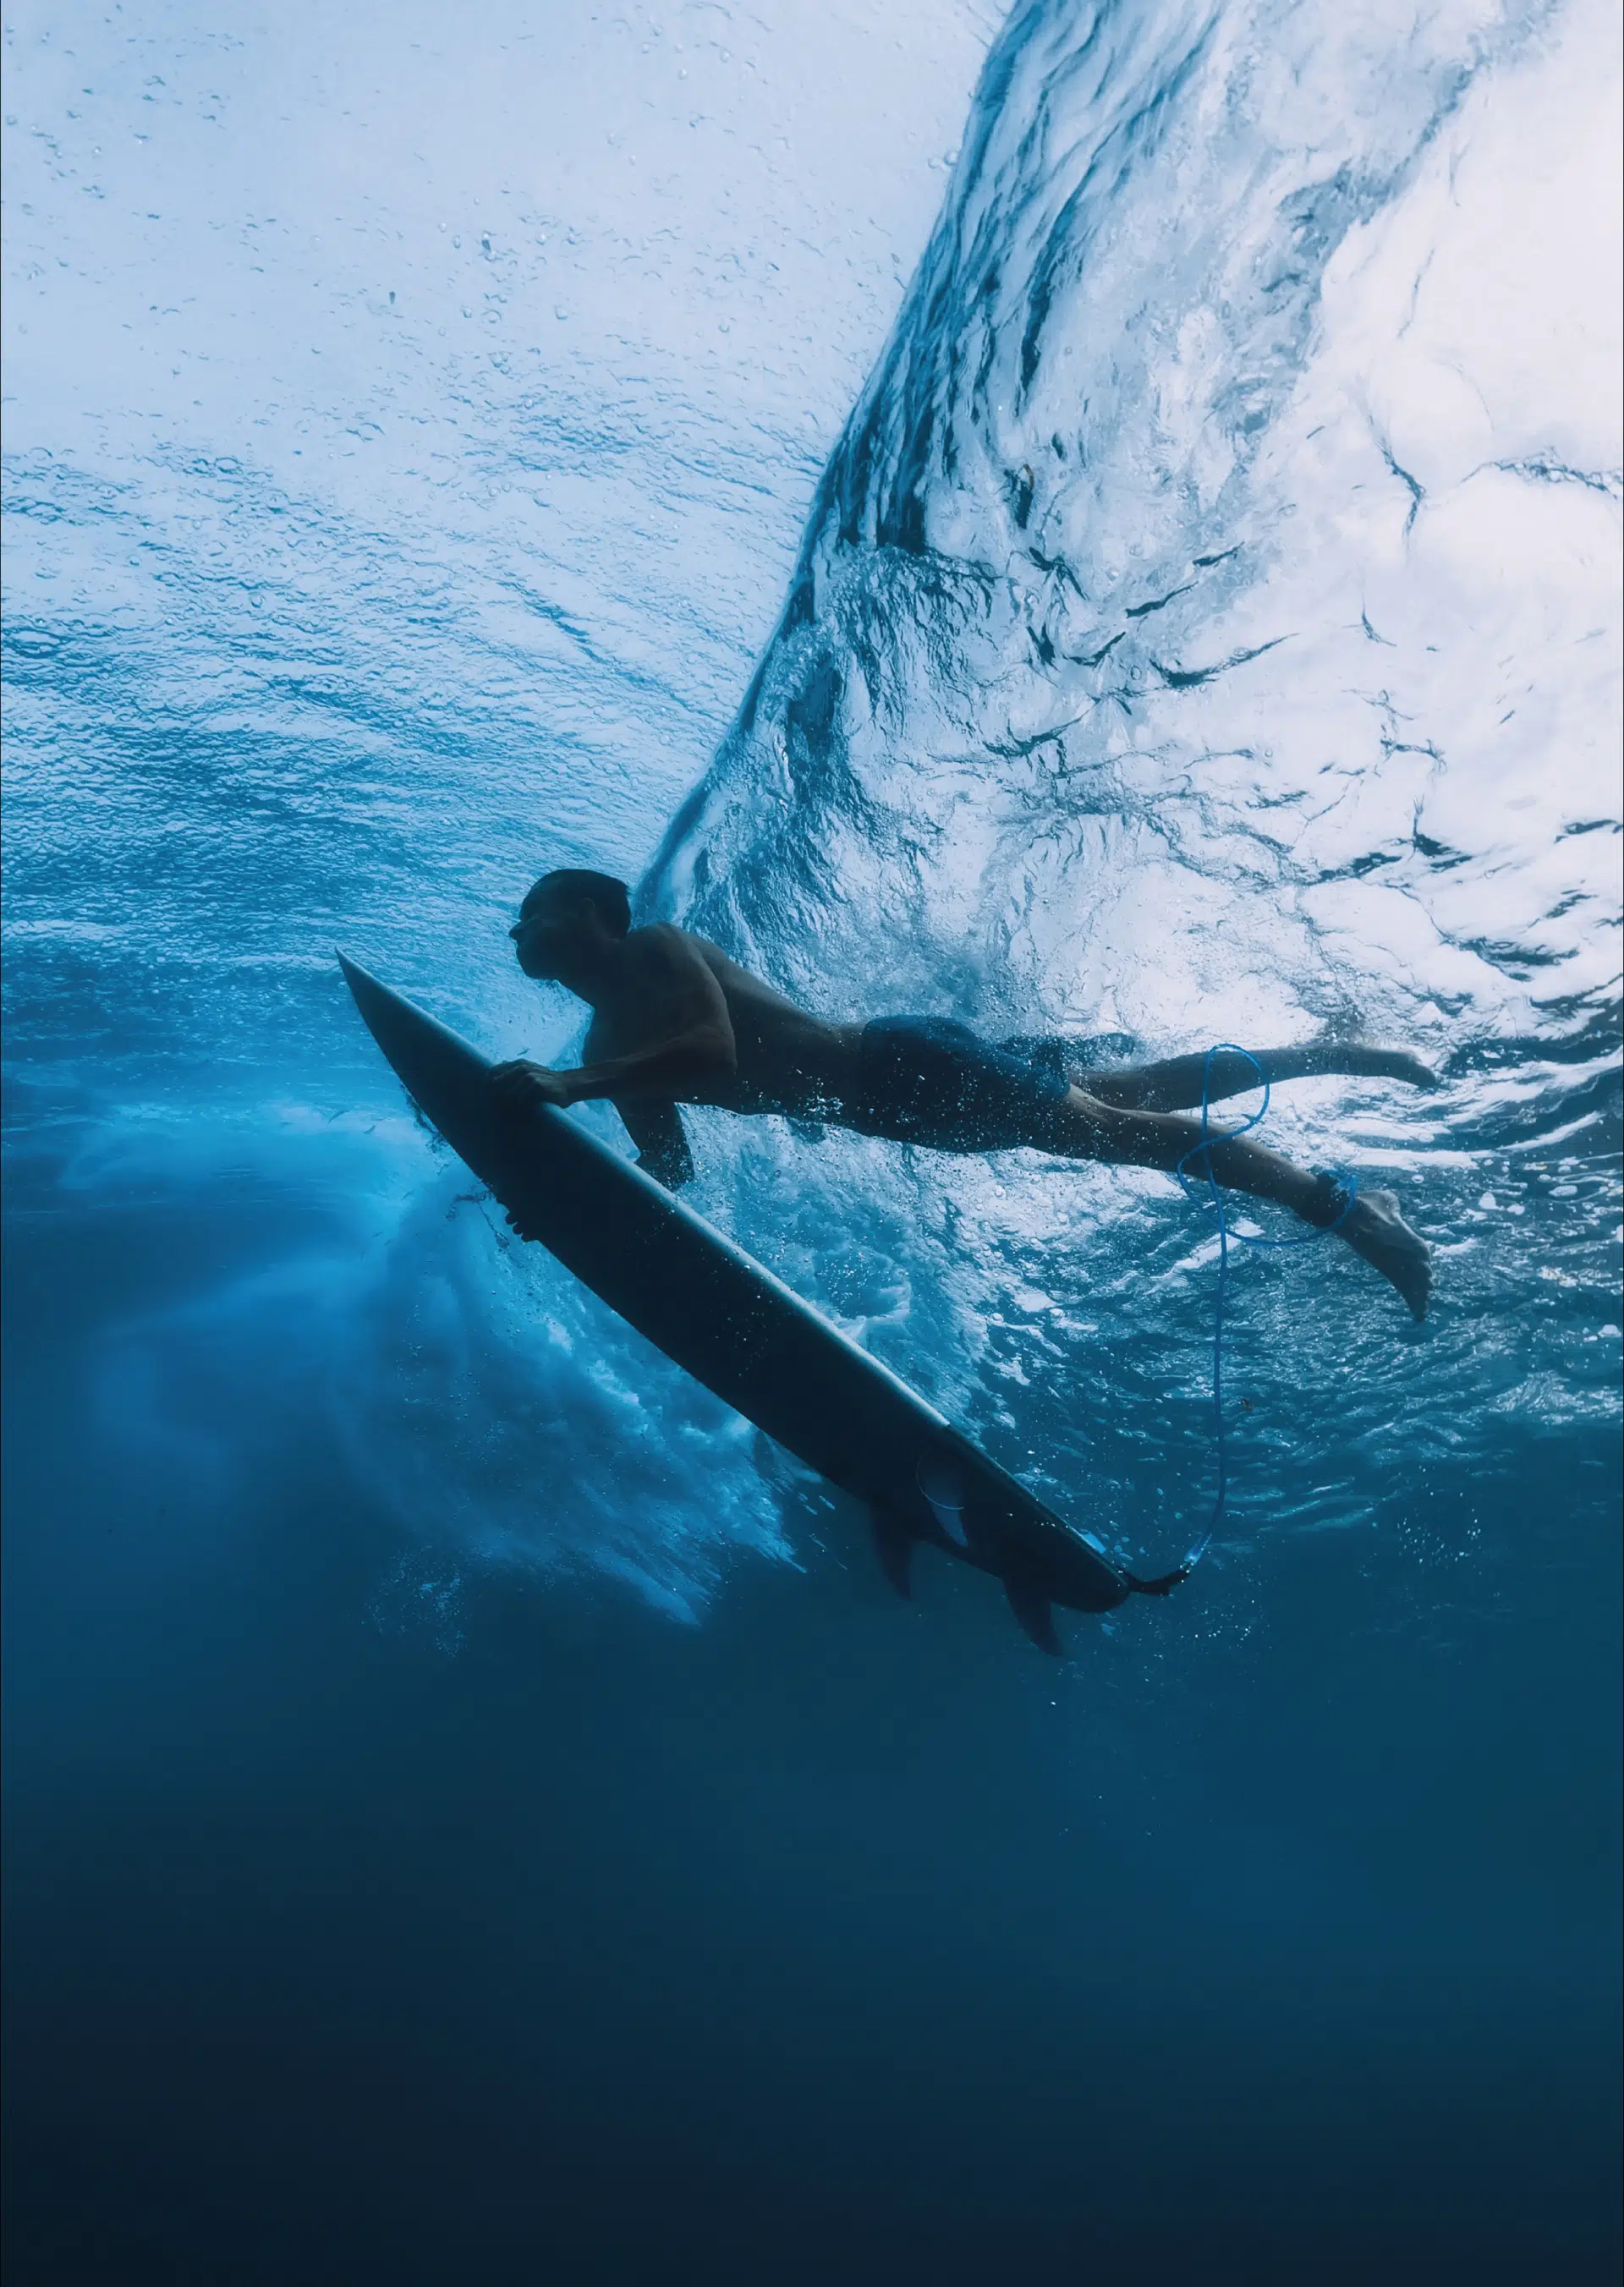 Man surfing in the waves - webbiz digital services